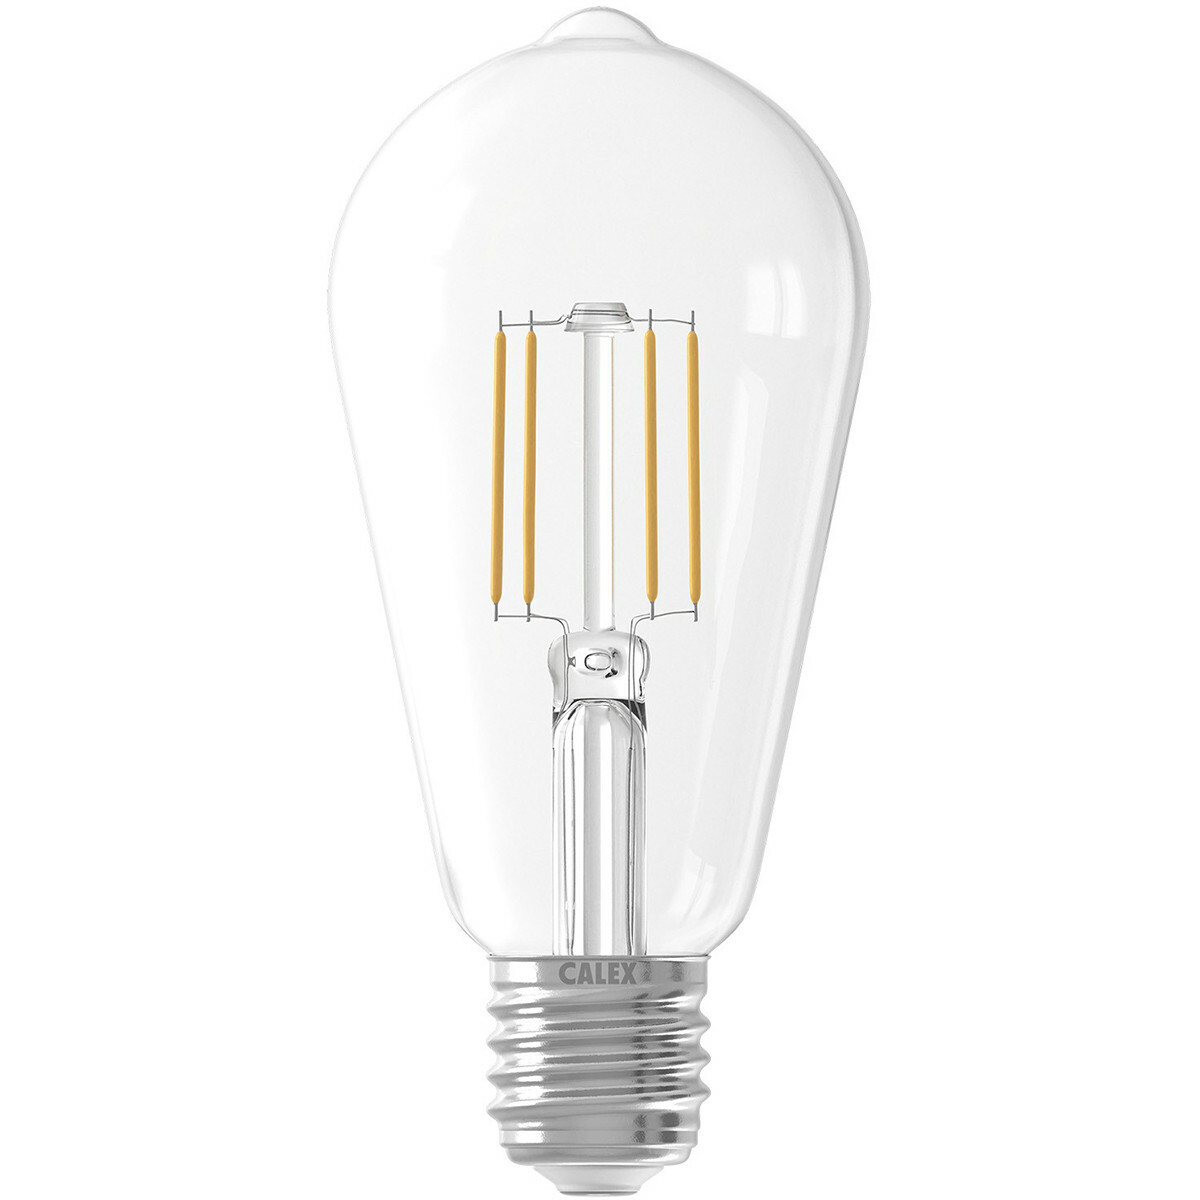 elektrode tekort Impressionisme CALEX - LED Lamp - Filament ST64 - E27 Fitting - 6W - Warm Wit 2700K -  Transparant Helder | BES LED